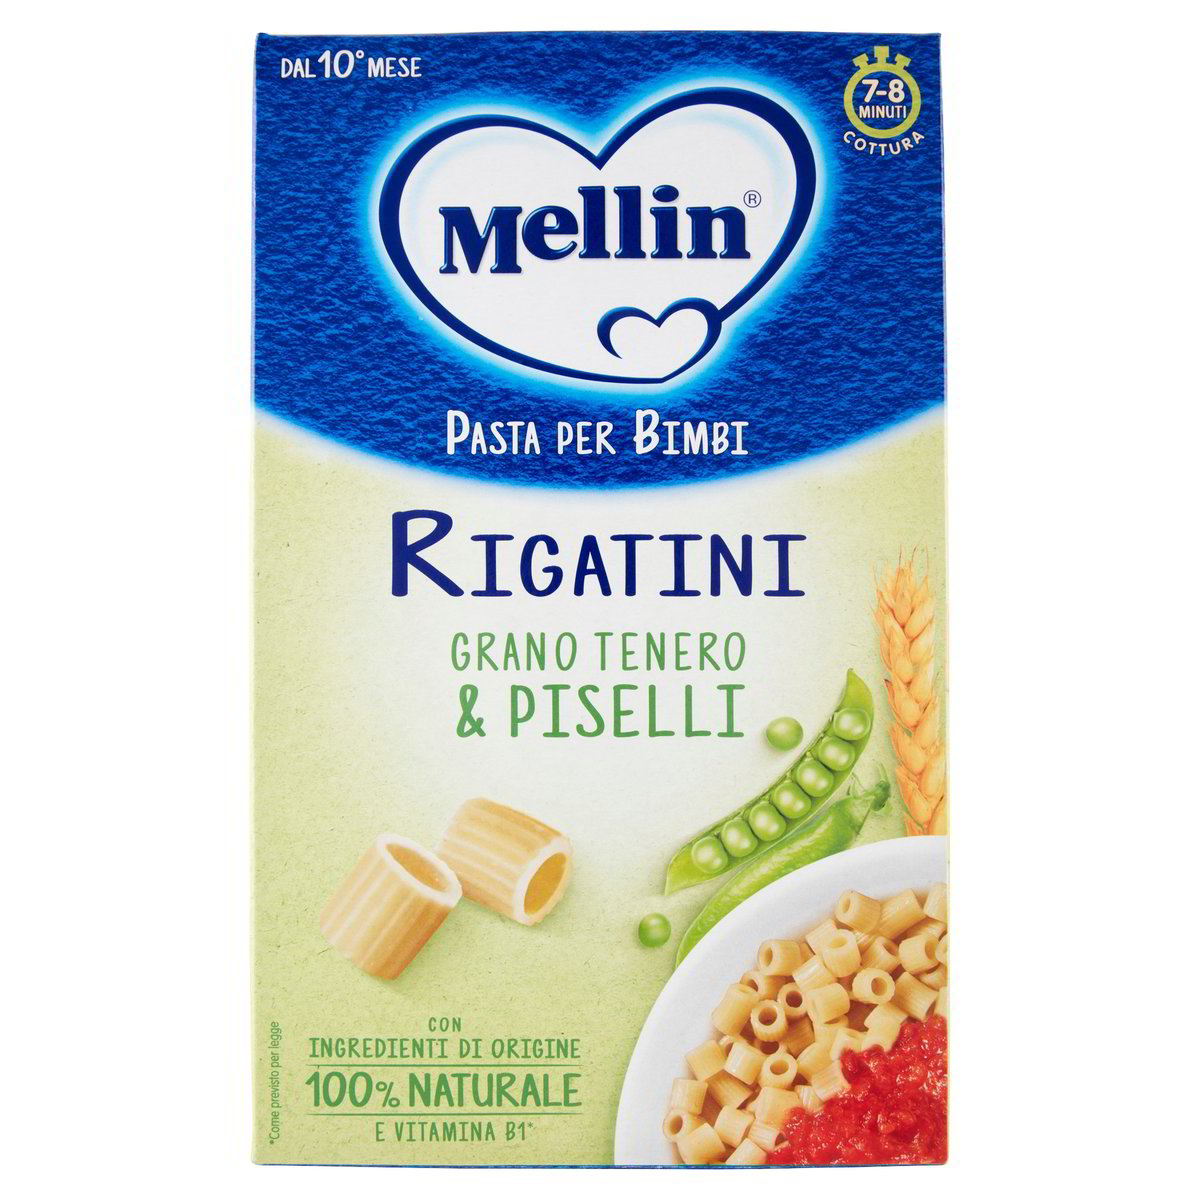 Pasta Per Bimbi Rigatini Grano Tenero & Piselli